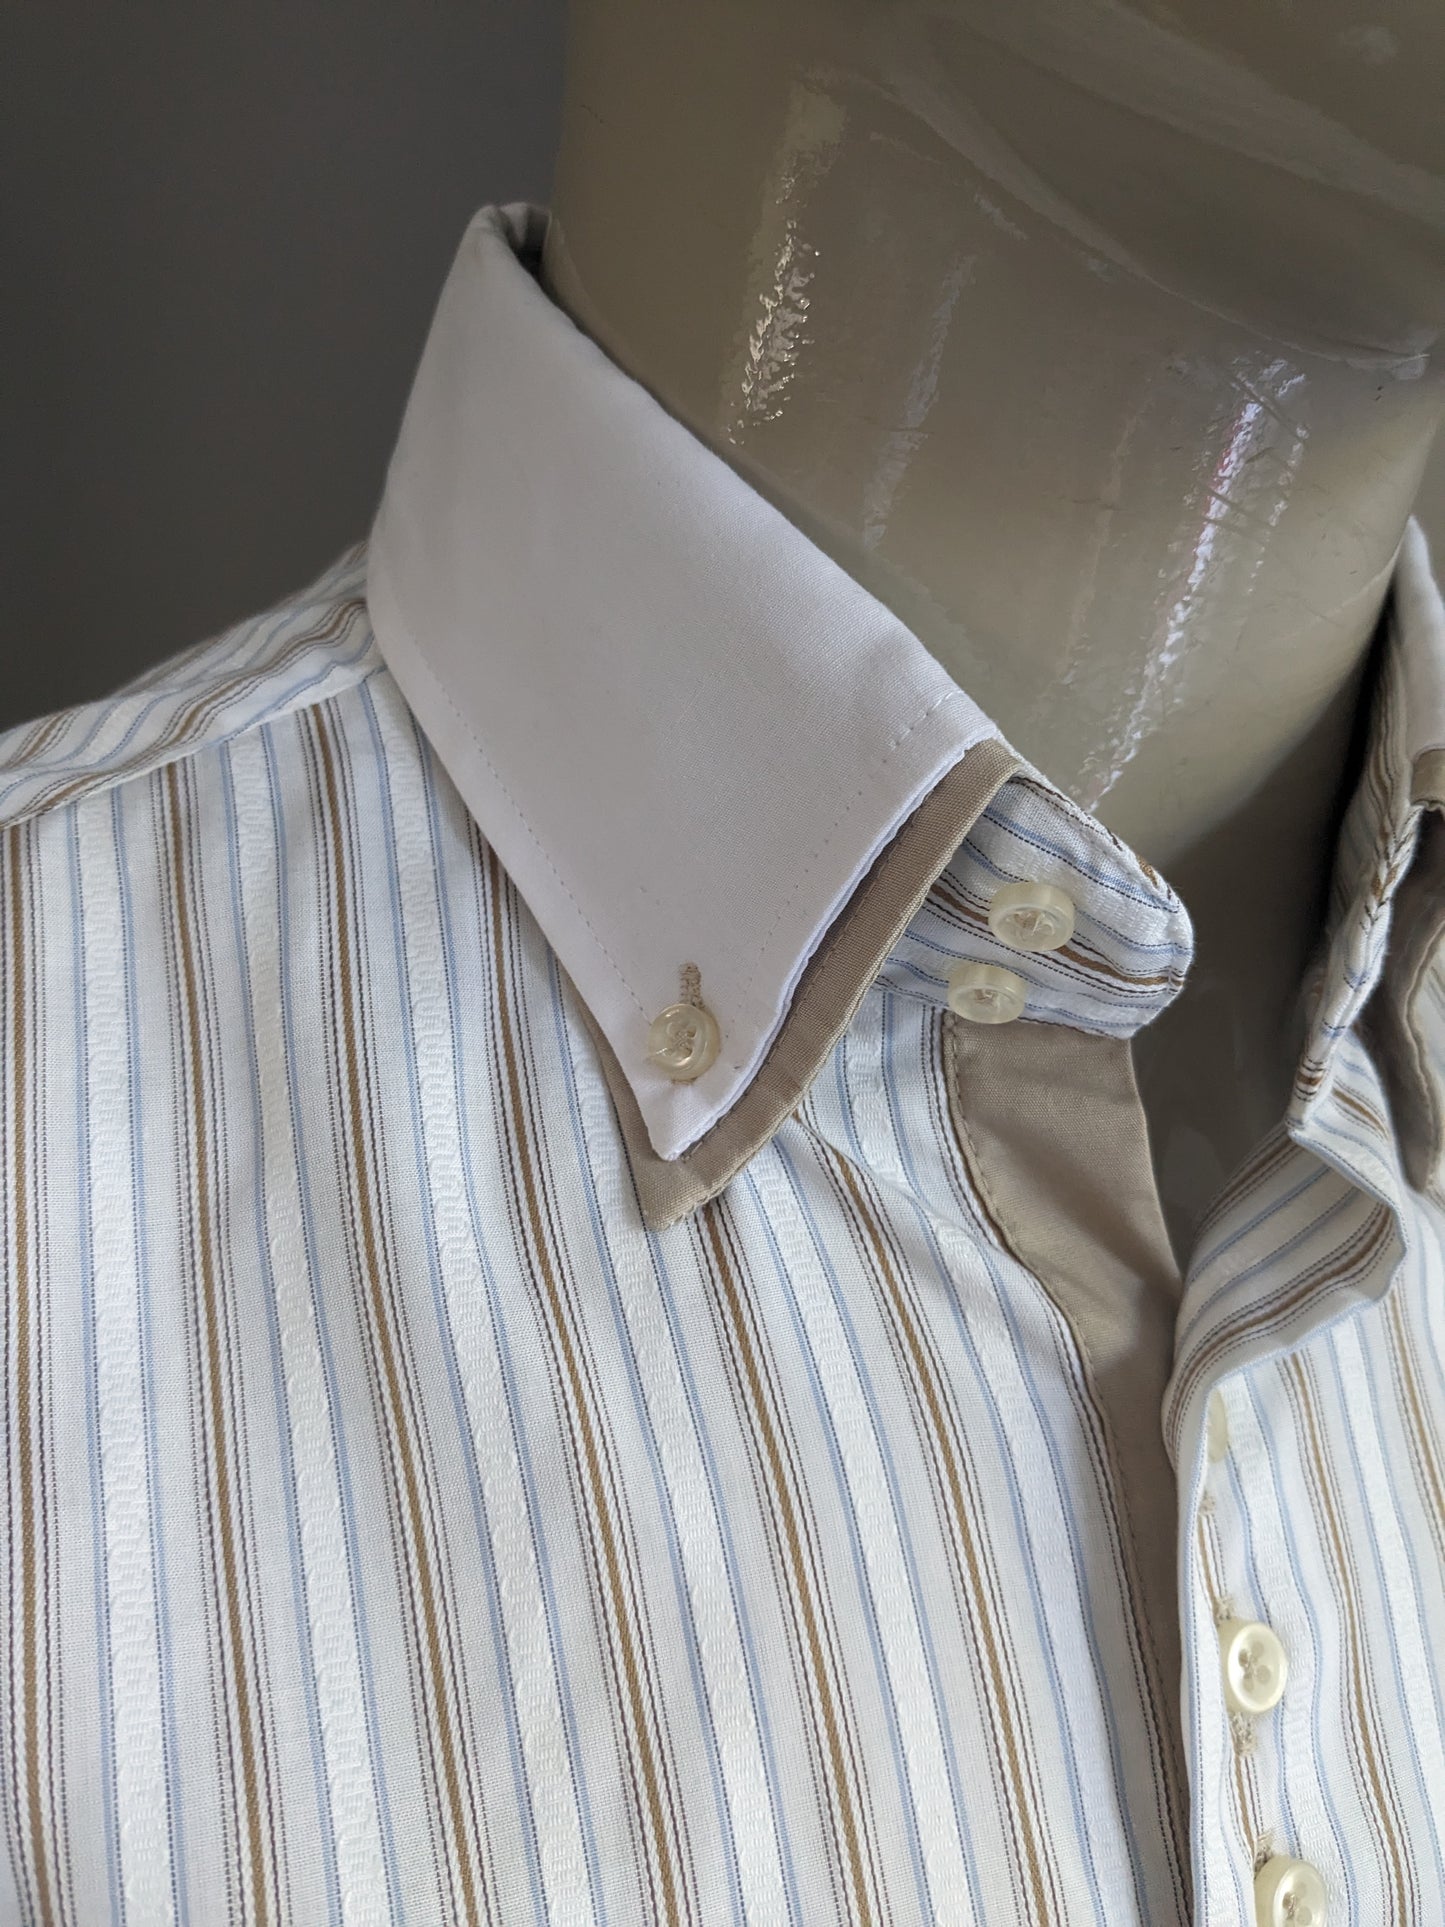 Camicia Turunç con doppio colletto. Strisce marrone blu bianco. Dimensione XL / XXL.